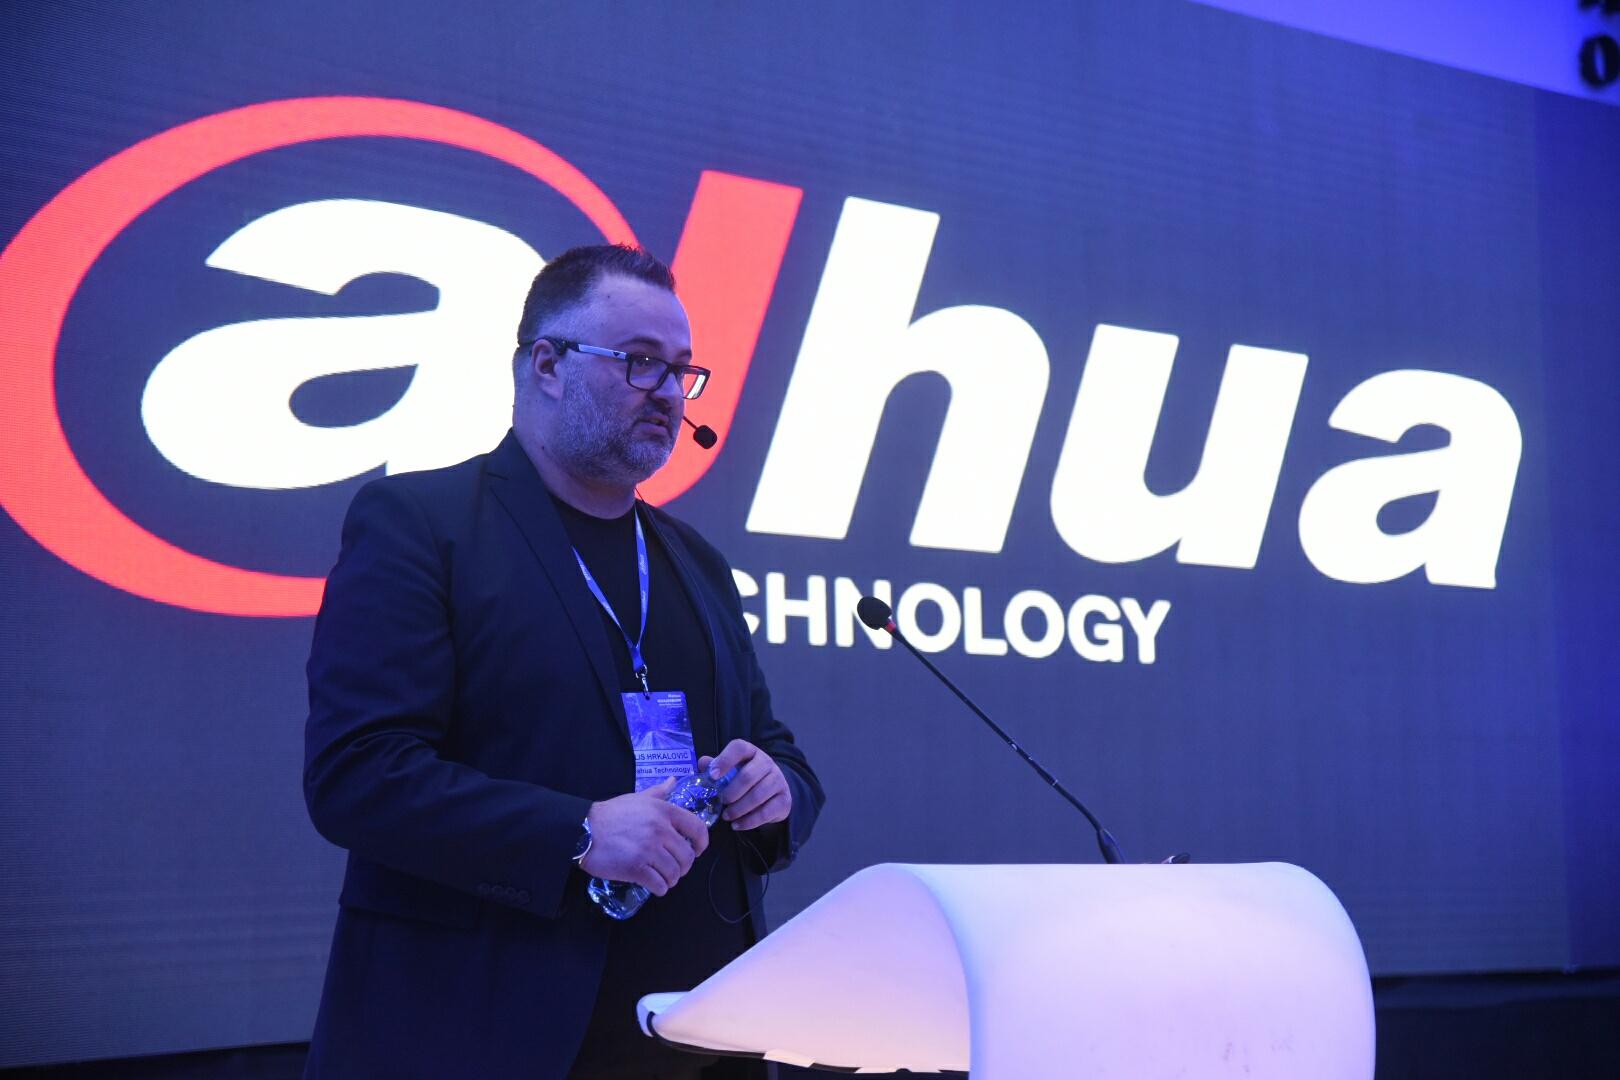 Održana prva stručna konferencija "Dahua Roadshow 2019": Predstavljeni najnoviji sigurnosni sistemi u oblasti tehničke zaštite i videoanalitike